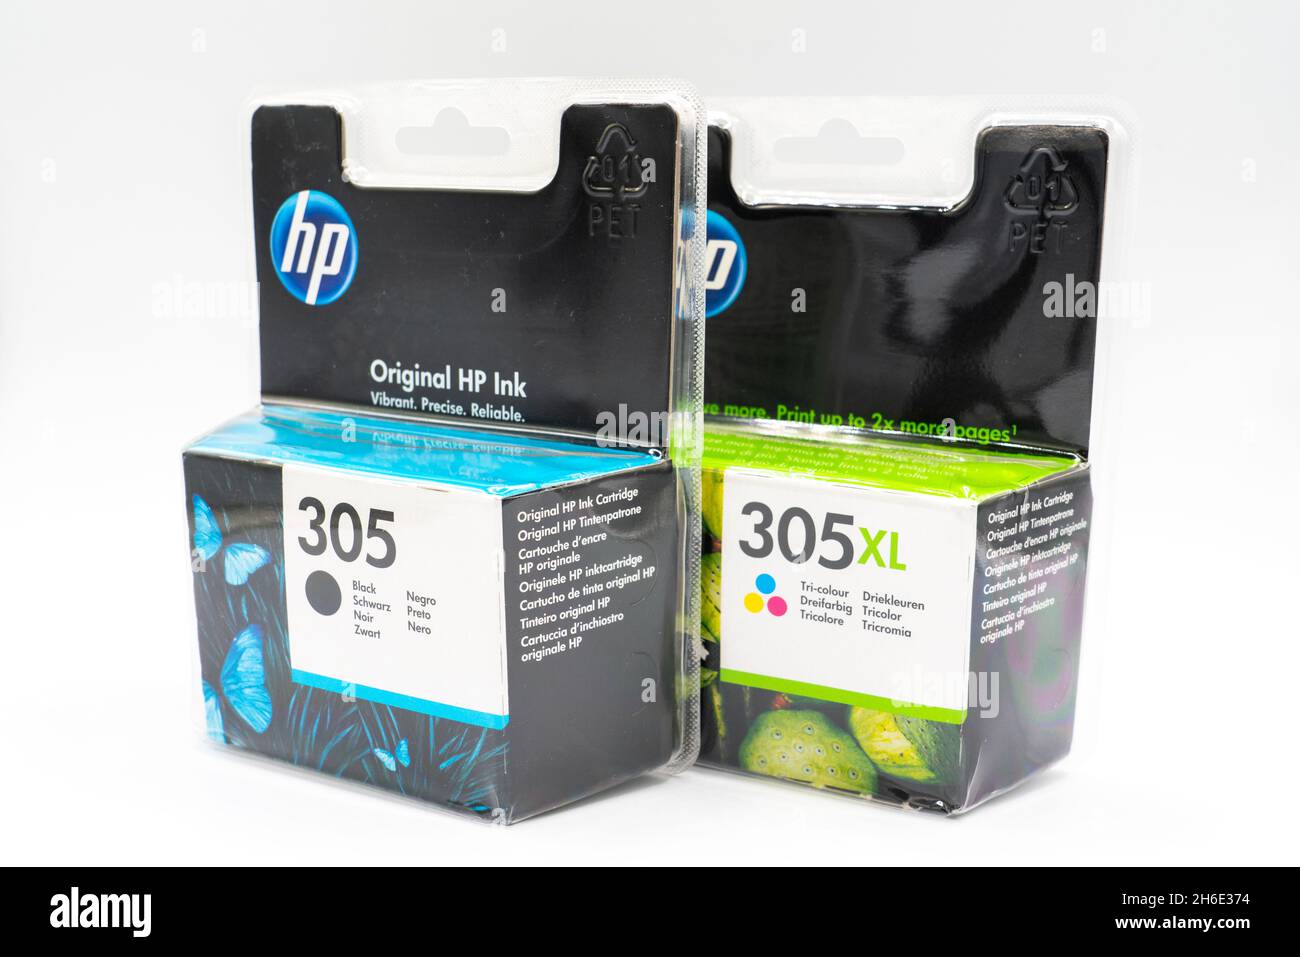 HP 305XL - Cartouche d'encre couleur et noir + crédit Instant Ink